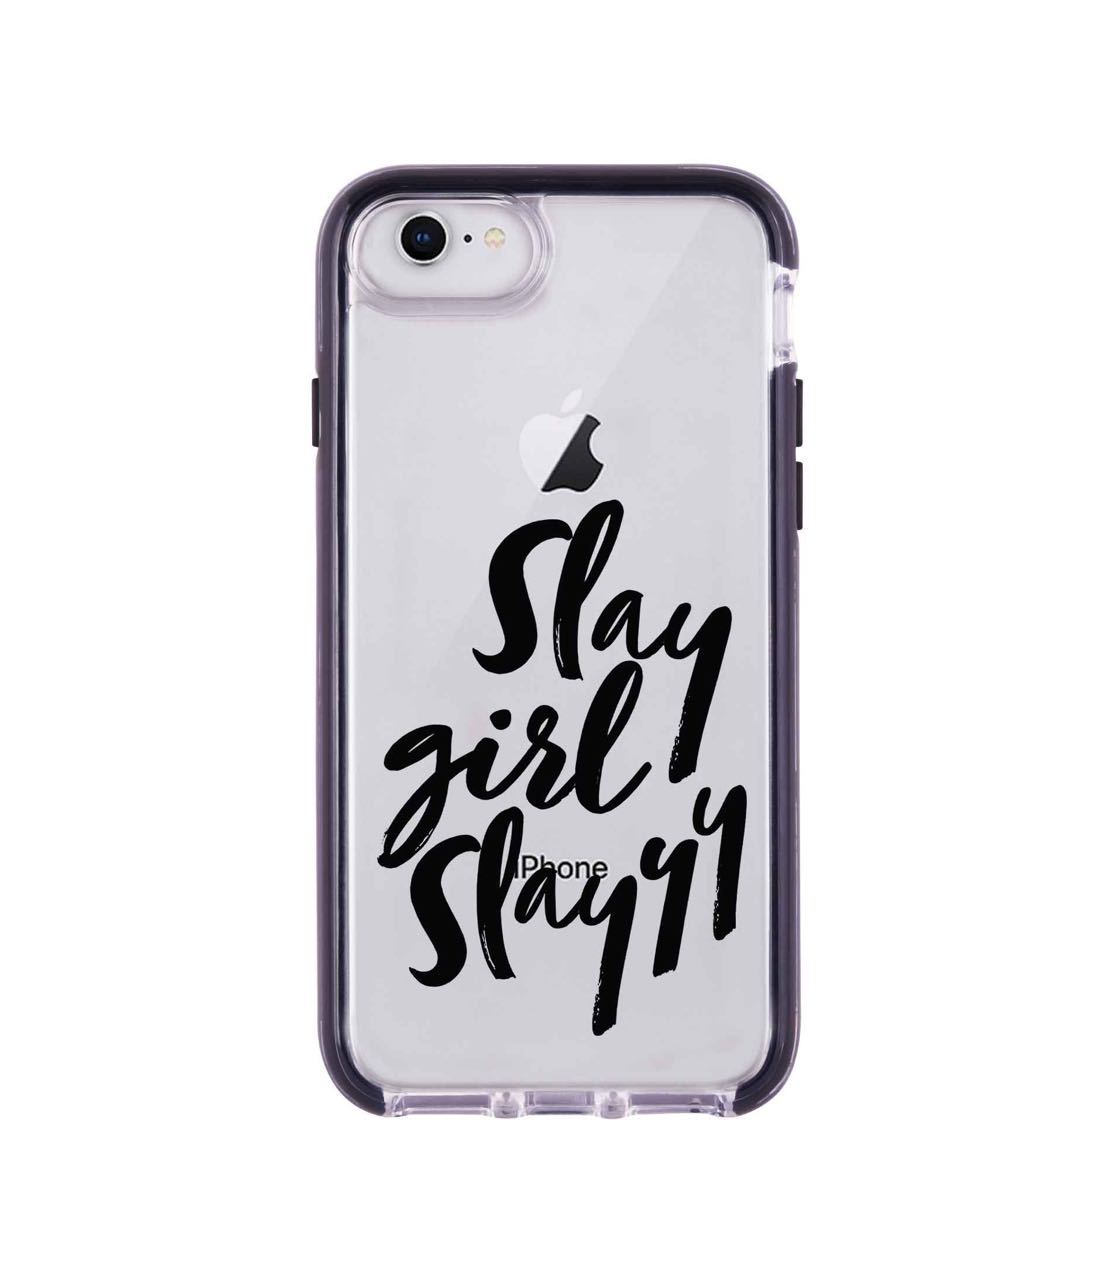 Slay girl Slay - Extreme Phone Case for iPhone SE (2020)